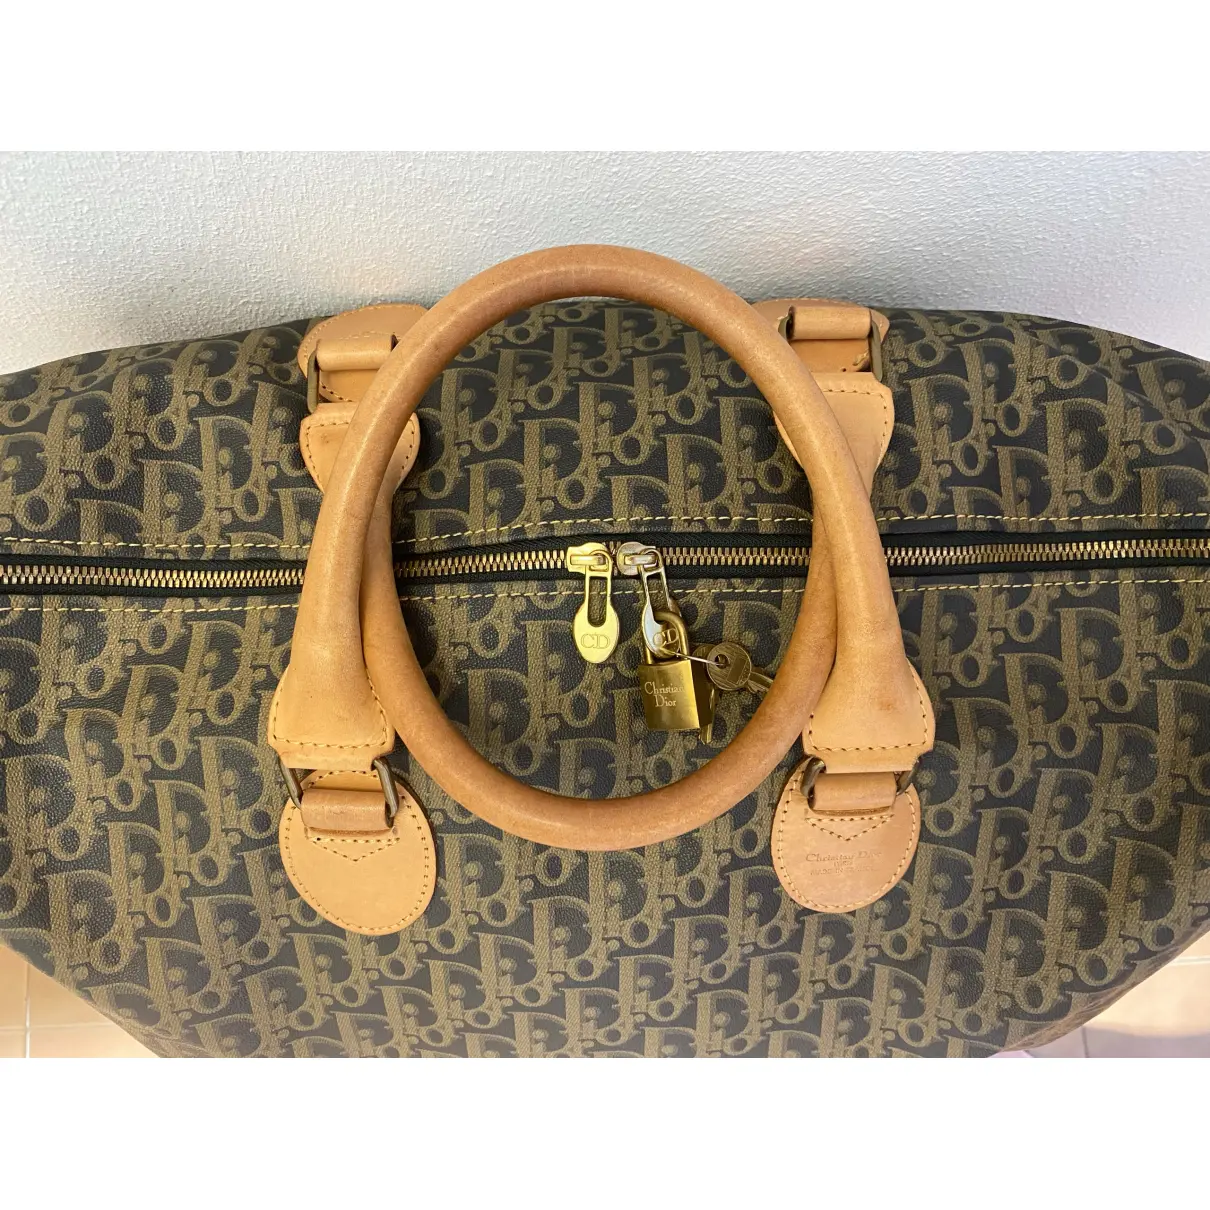 Buy Dior Cloth handbag online